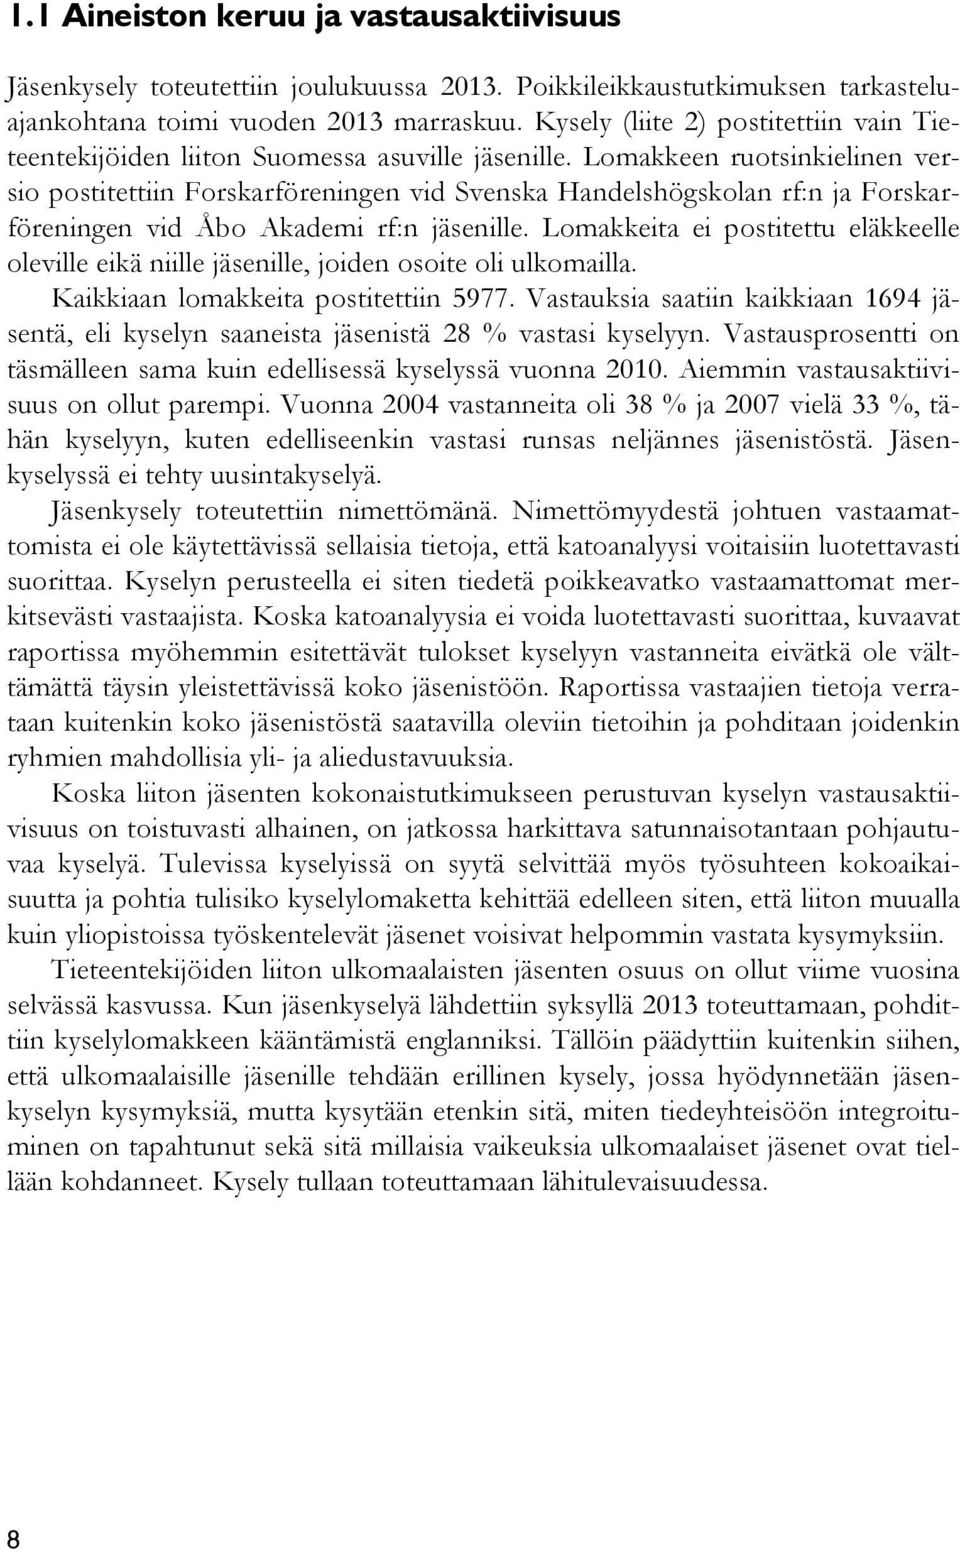 Lomakkeen ruotsinkielinen versio postitettiin Forskarföreningen vid Svenska Handelshögskolan rf:n ja Forskarföreningen vid Åbo Akademi rf:n jäsenille.